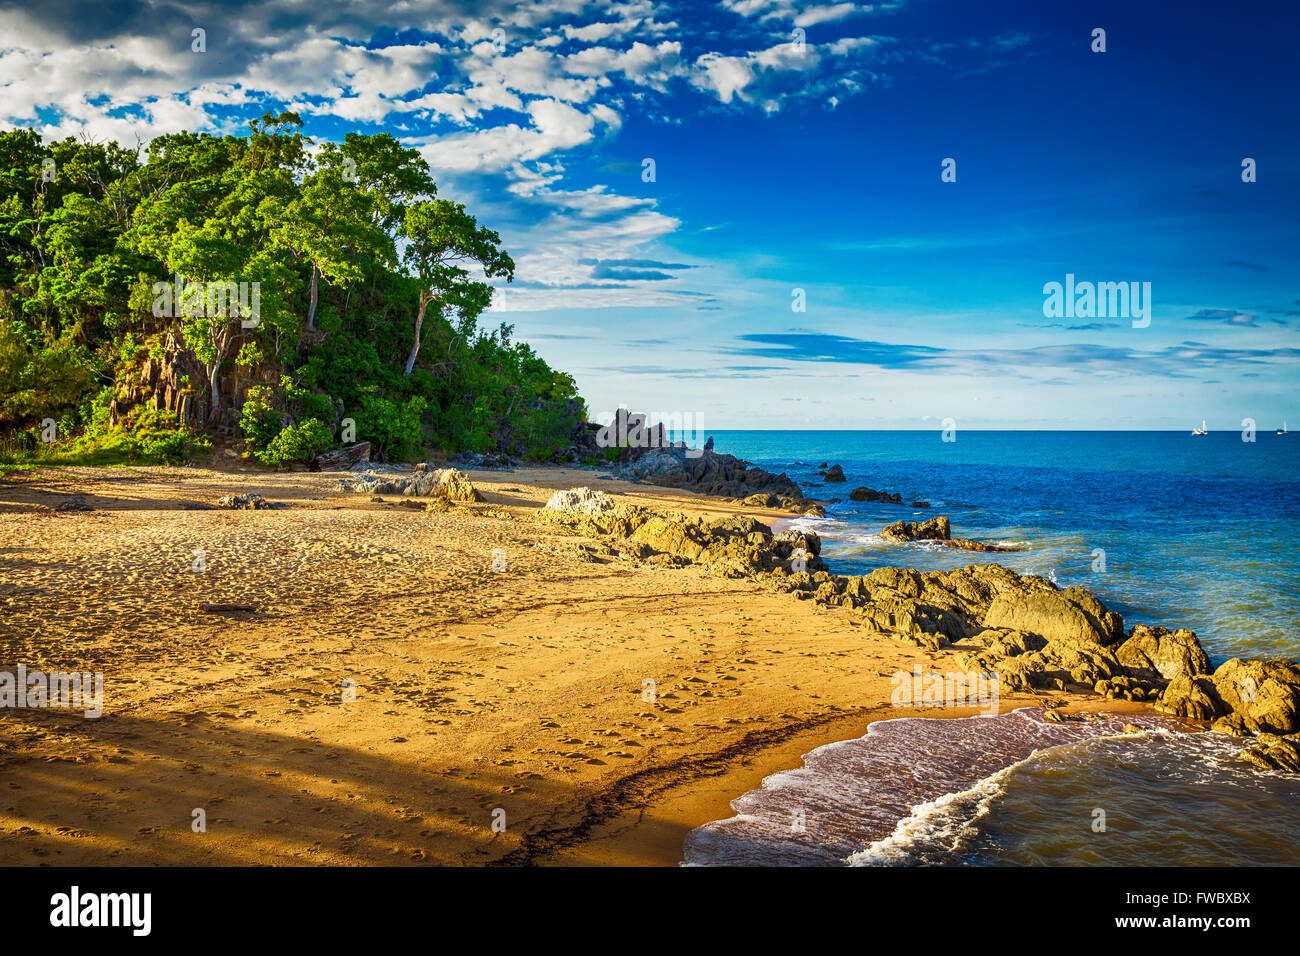 La principale plage de Palm Cove avec des rochers et des arbres pendant le coucher du soleil, de l'Australie Banque D'Images